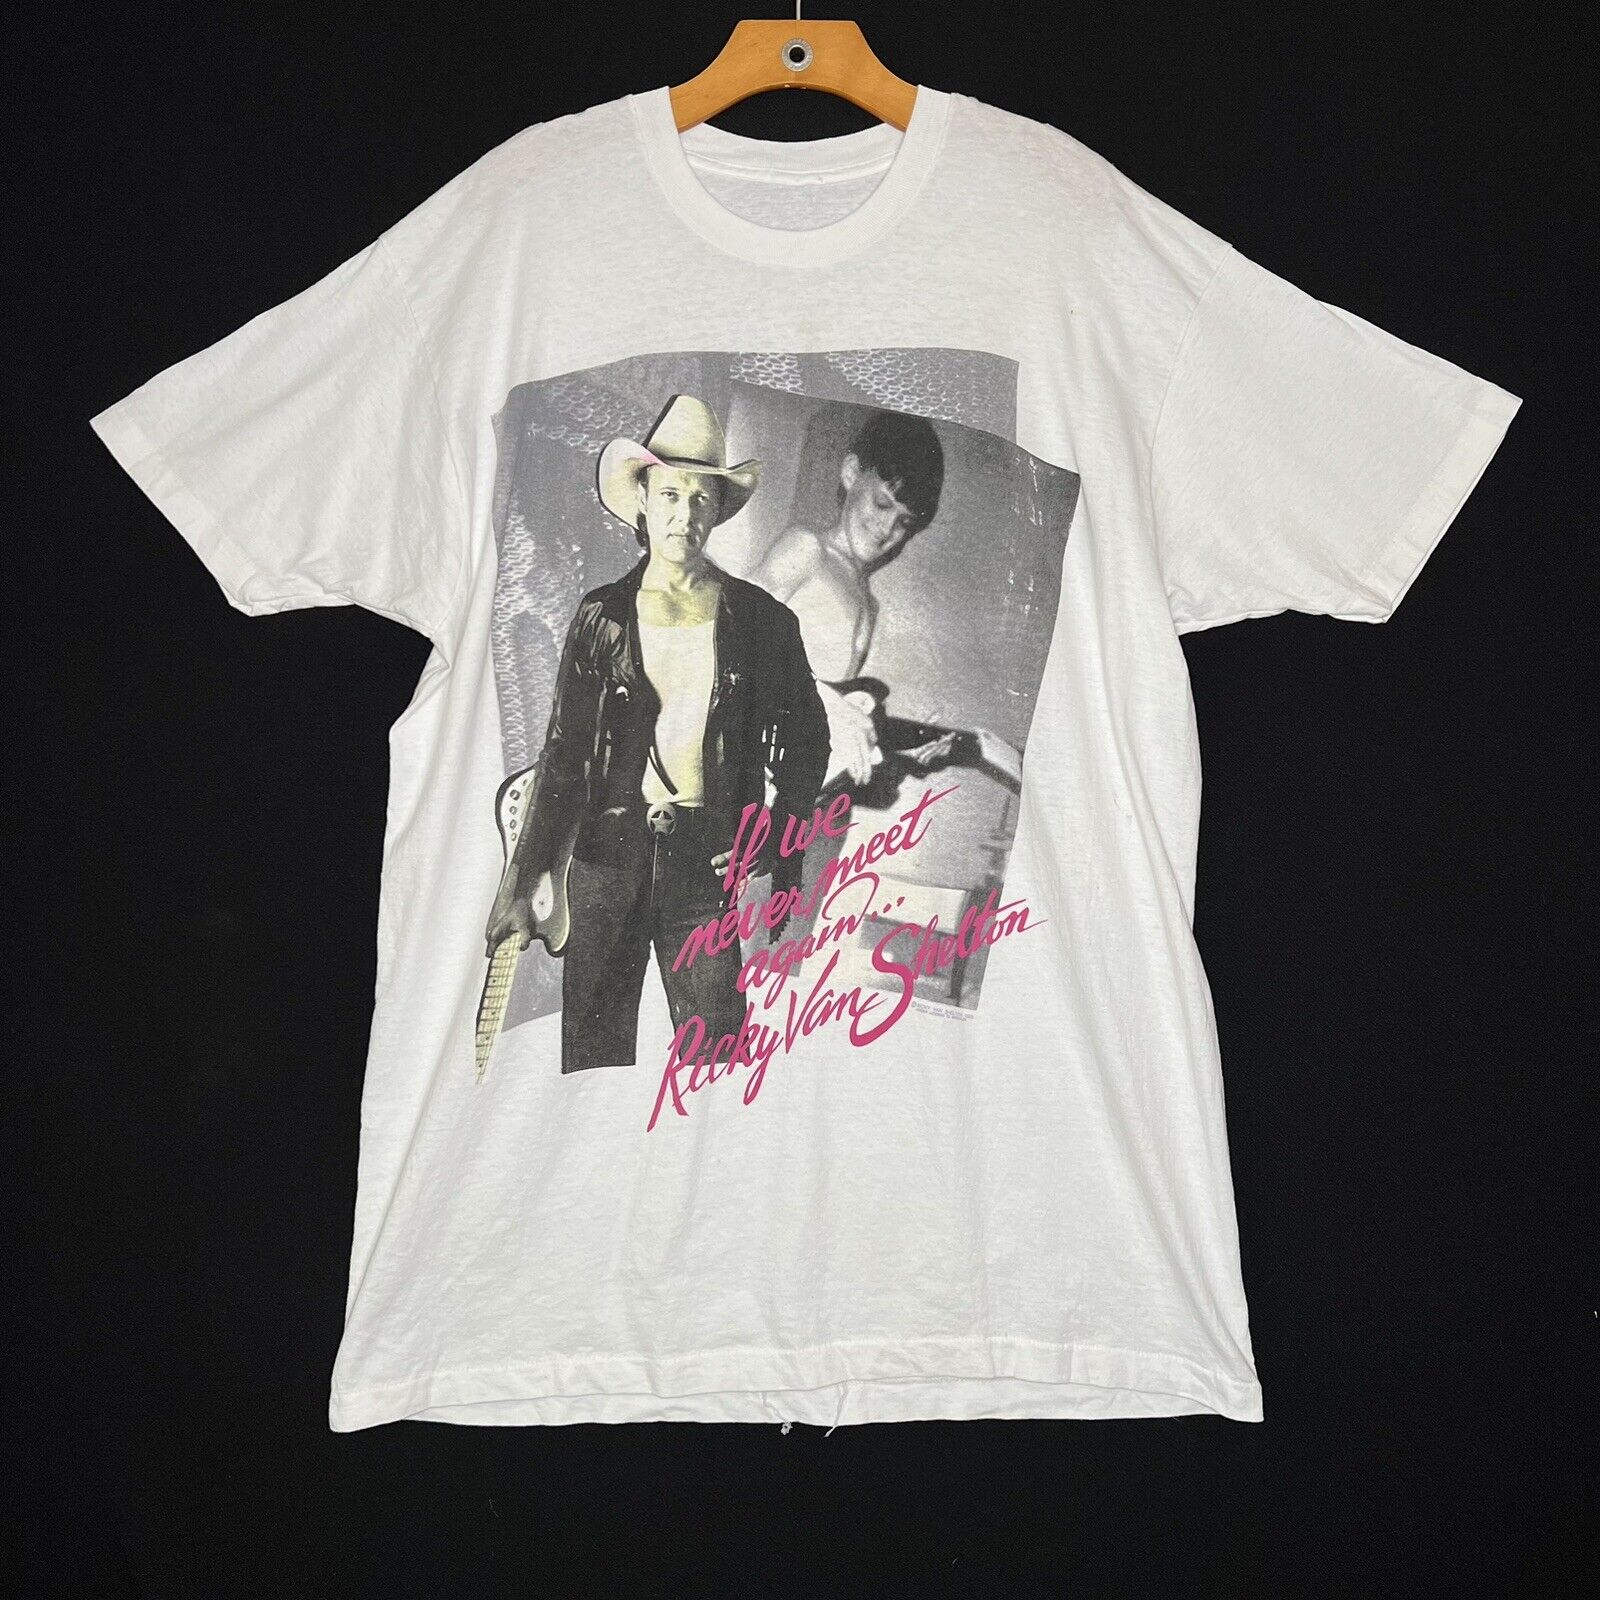 Vintage Ricky Van Shelton Country Singer 1998 T-Shirt 90s Music White